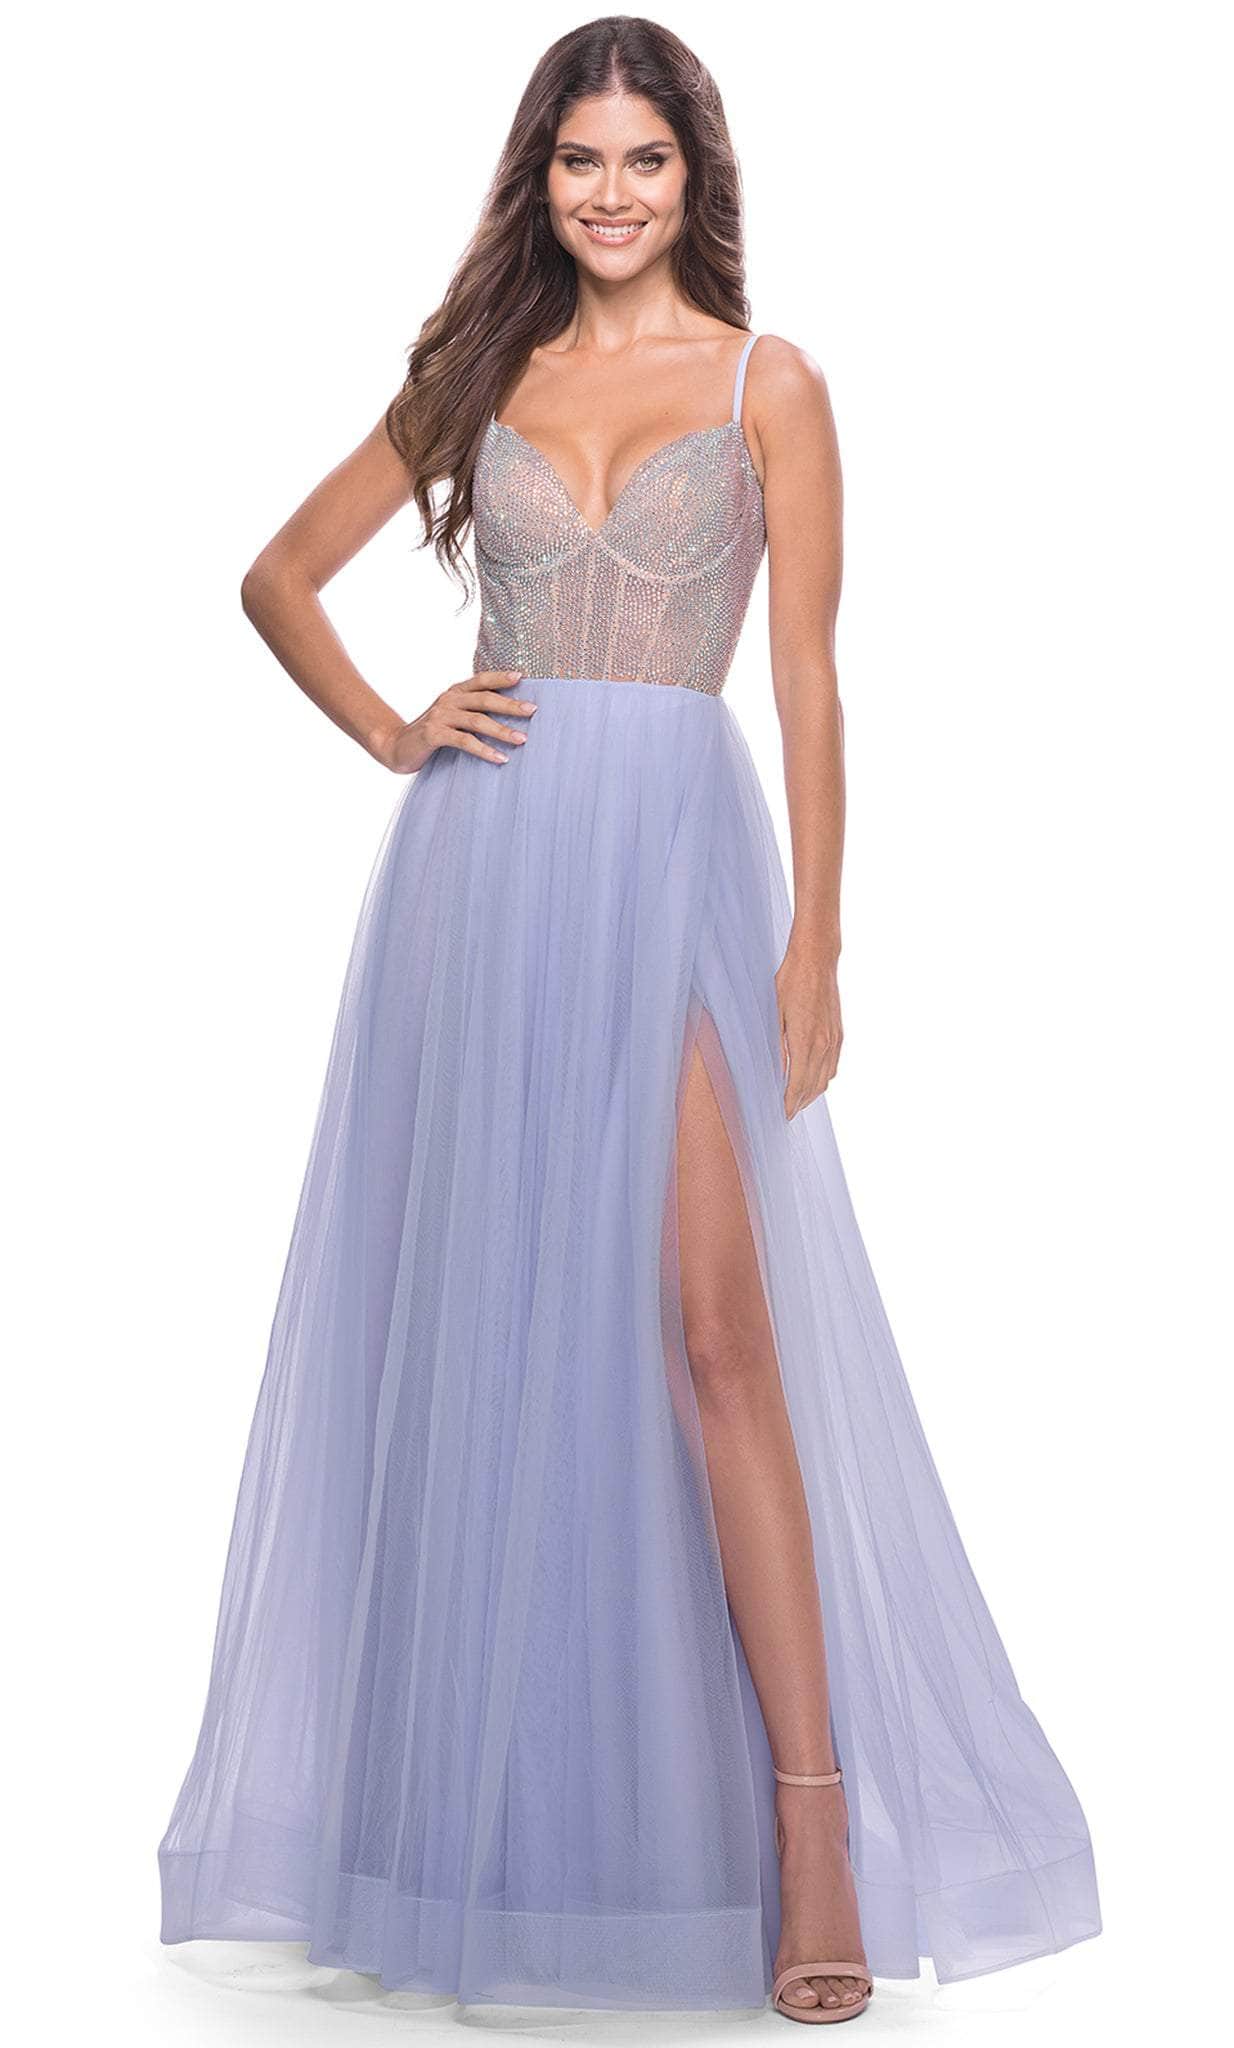 La Femme 31578 - Sweetheart Embellished Long Classic Prom Dress
